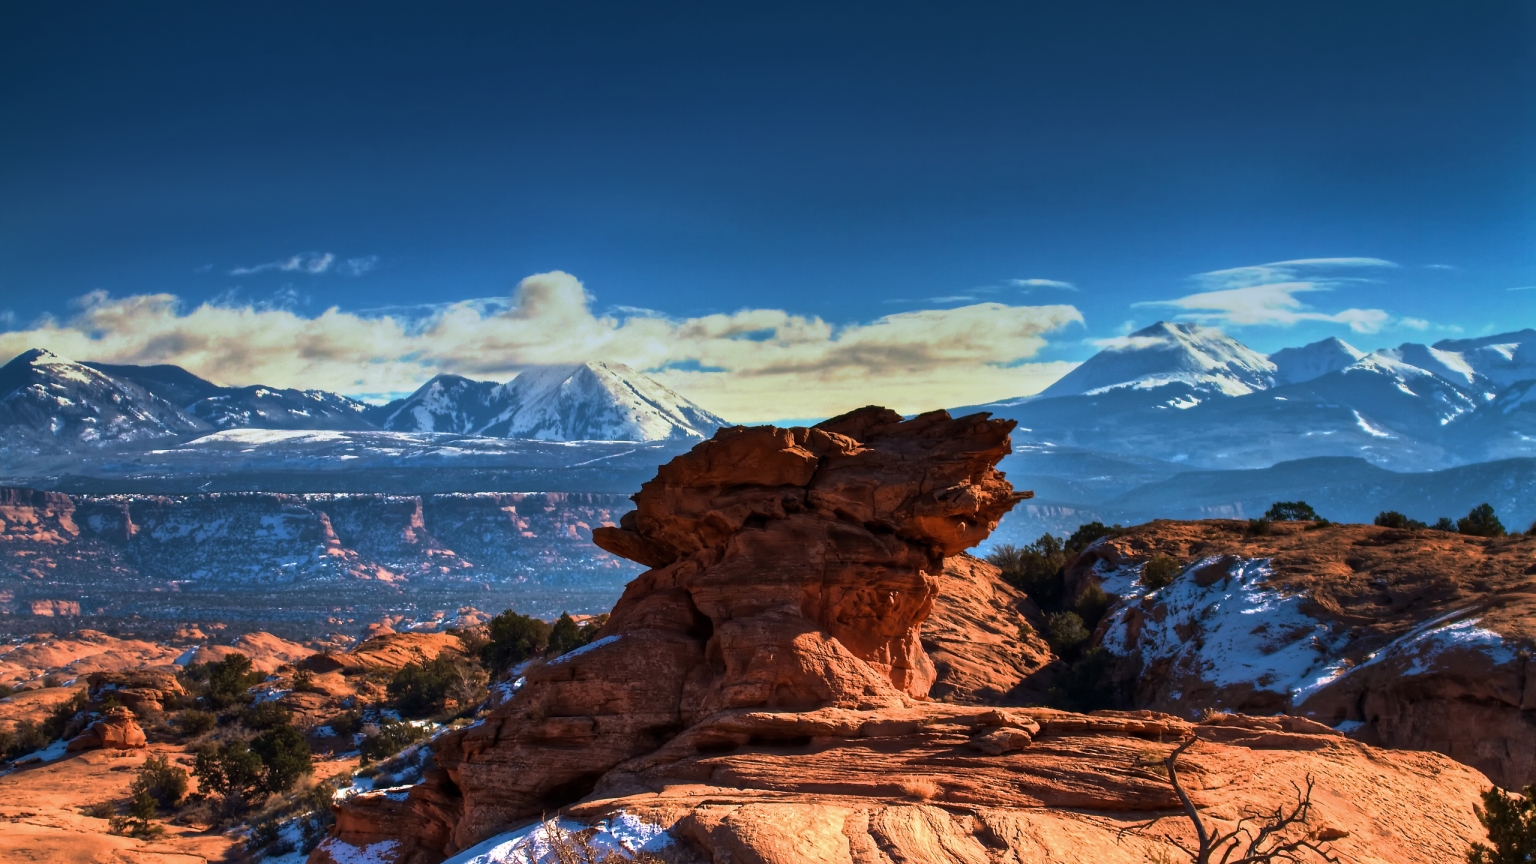 Moab Utah Mountains for 1536 x 864 HDTV resolution